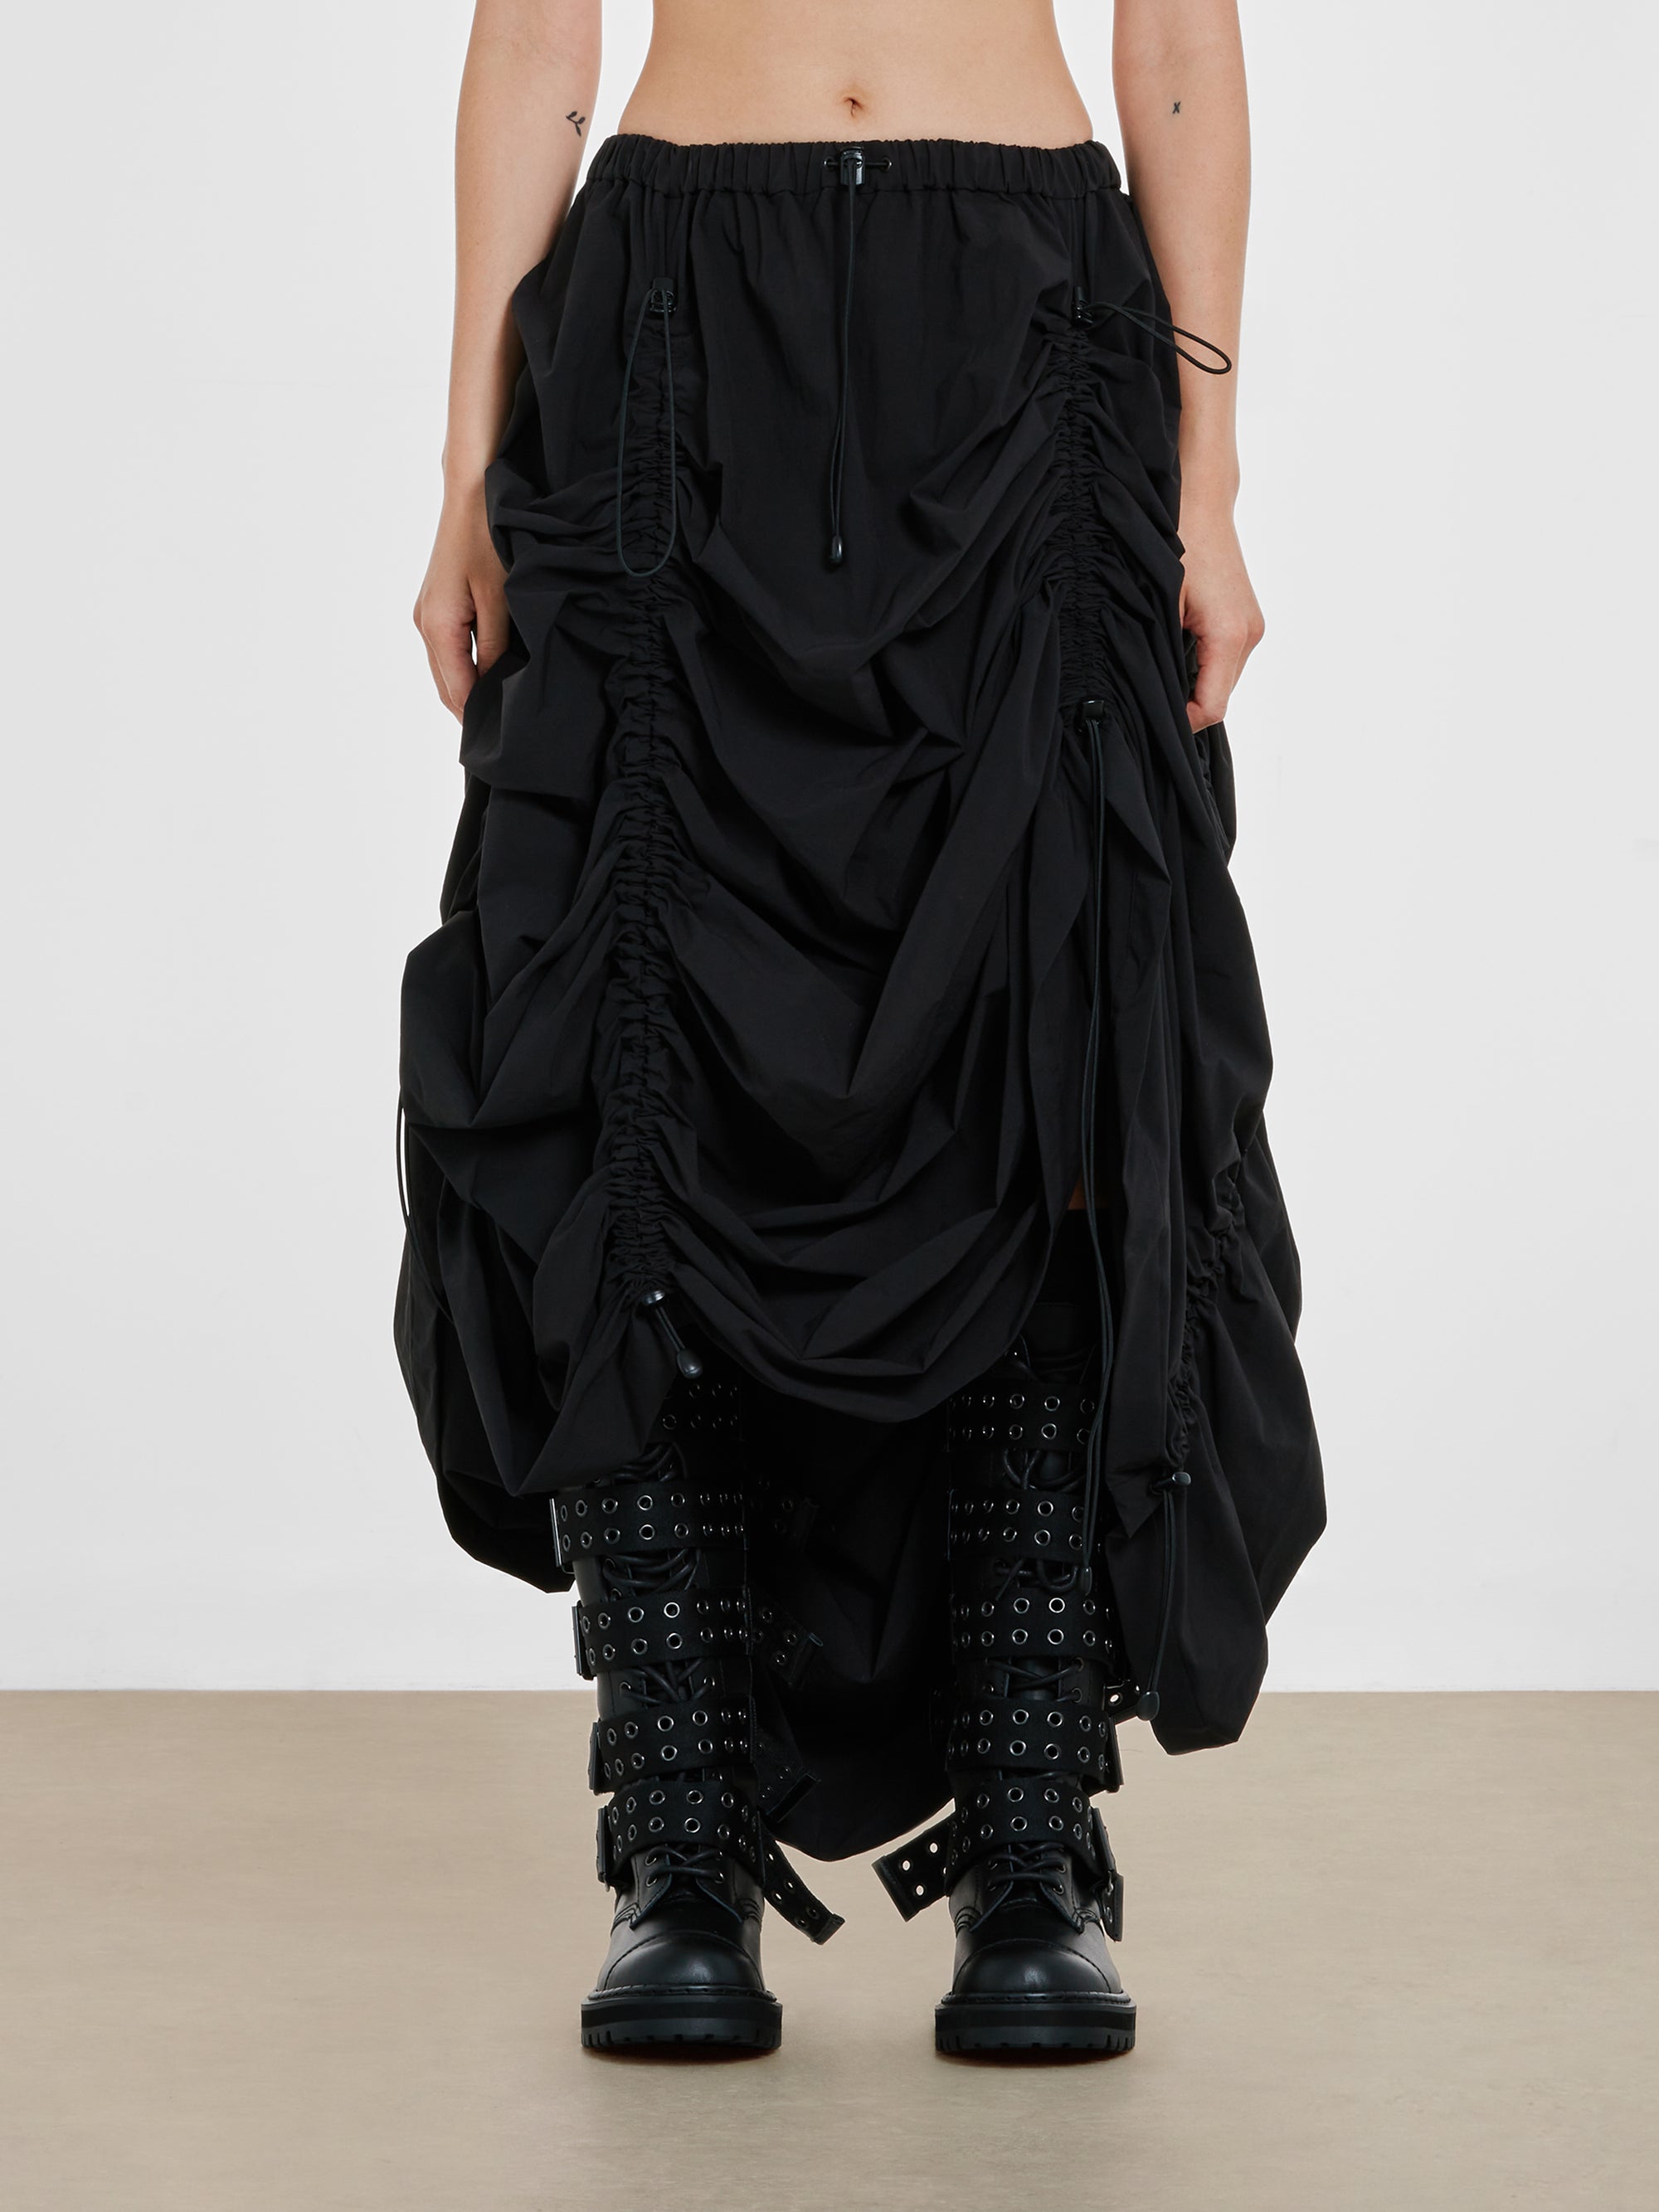 Junya Watanabe - Women’s Skirt - (Black) view 1